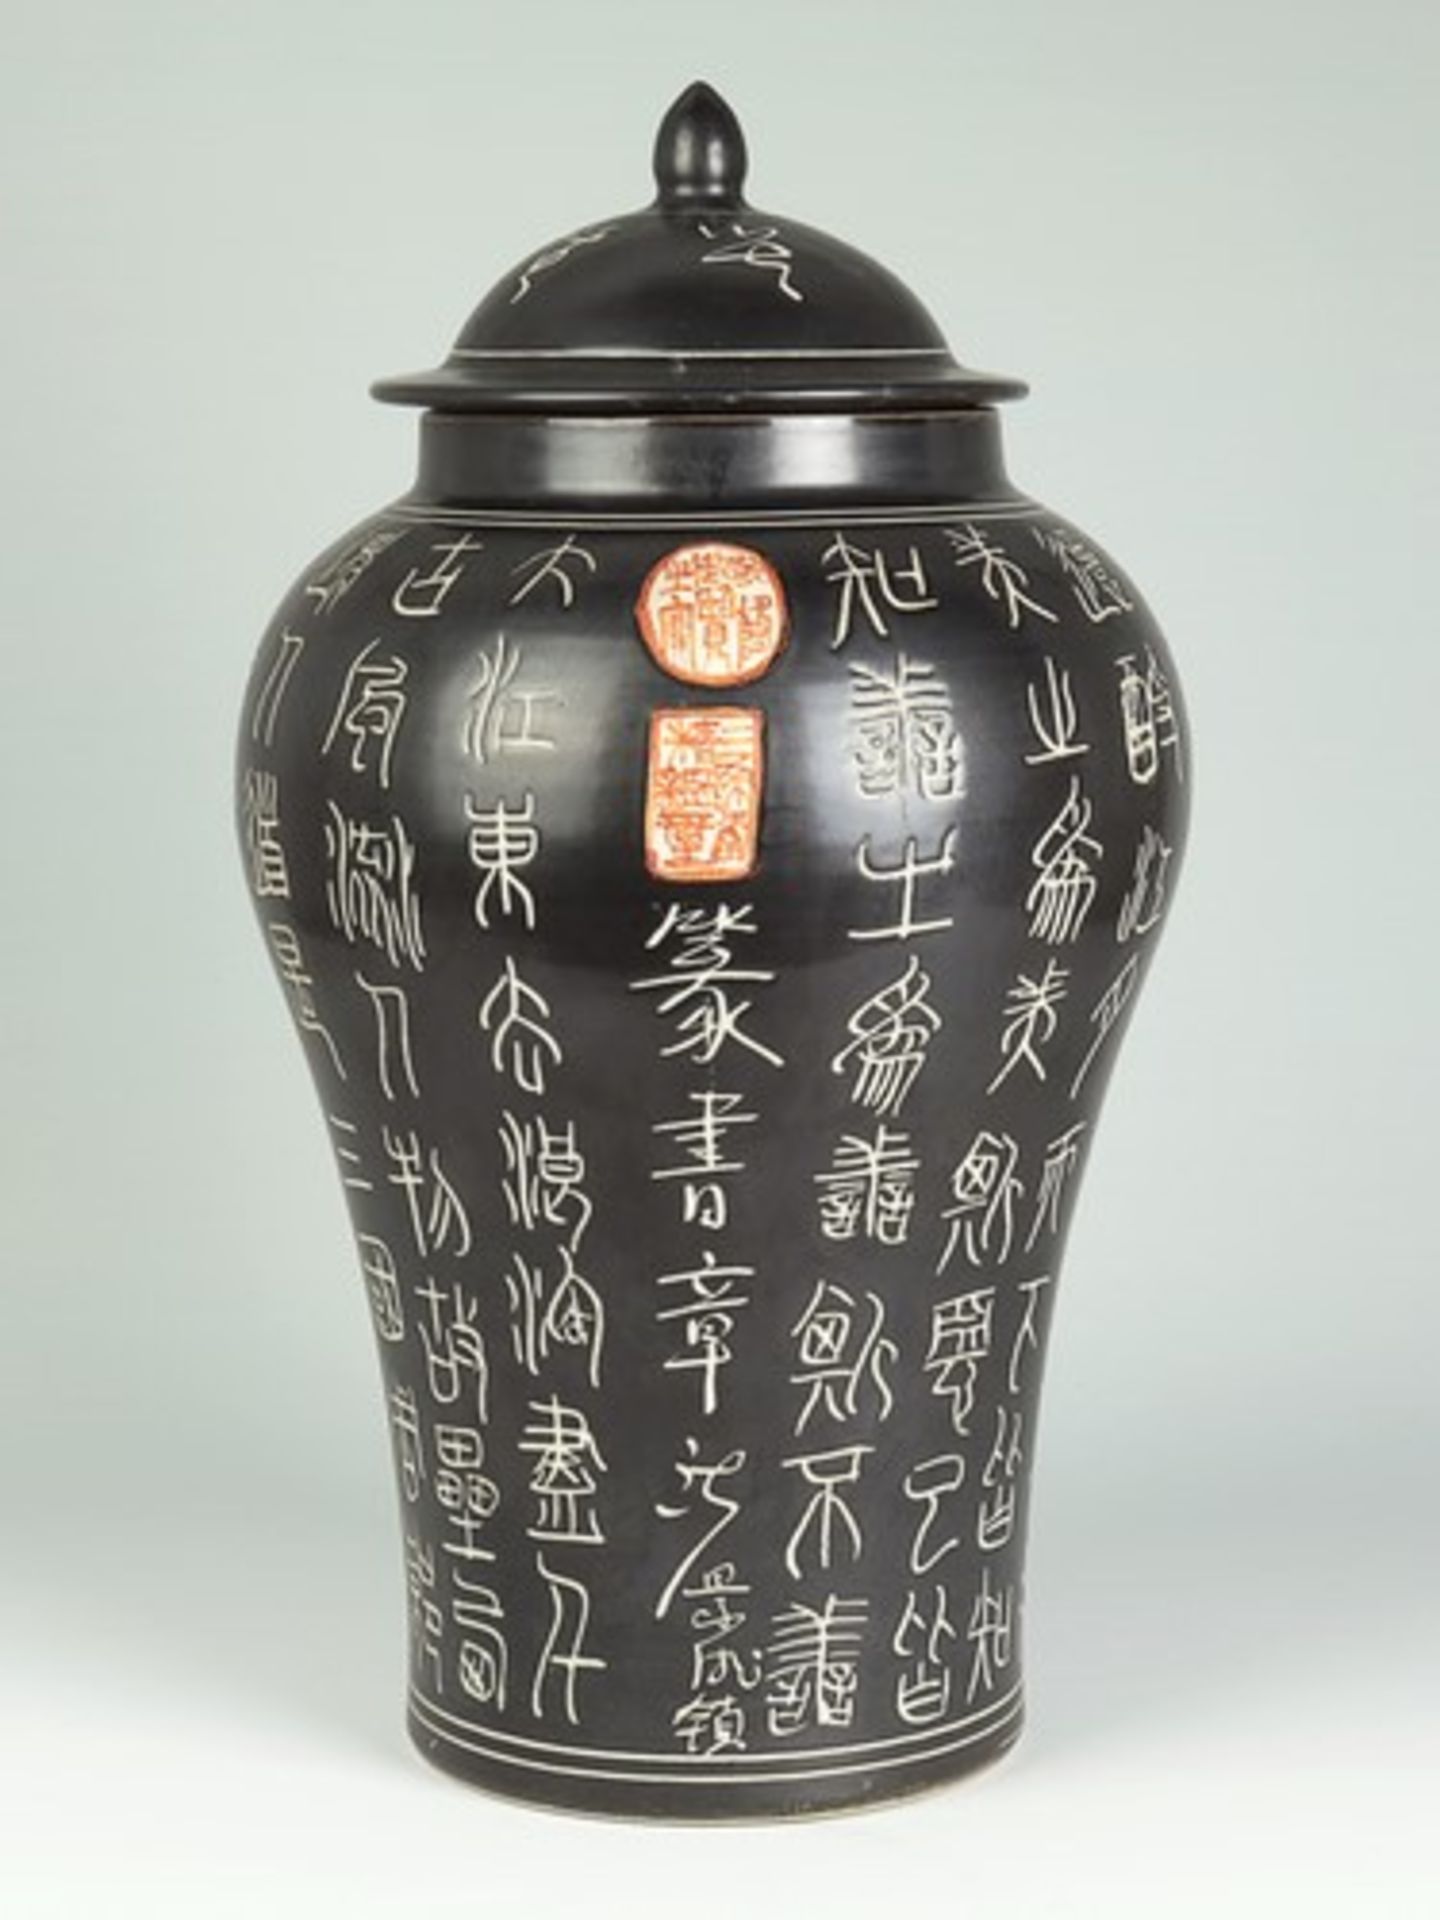 Deckelvase - China20.Jh., Porzellan, ungem., schwarz lasiert, umlaufend m. Schriftzeichen